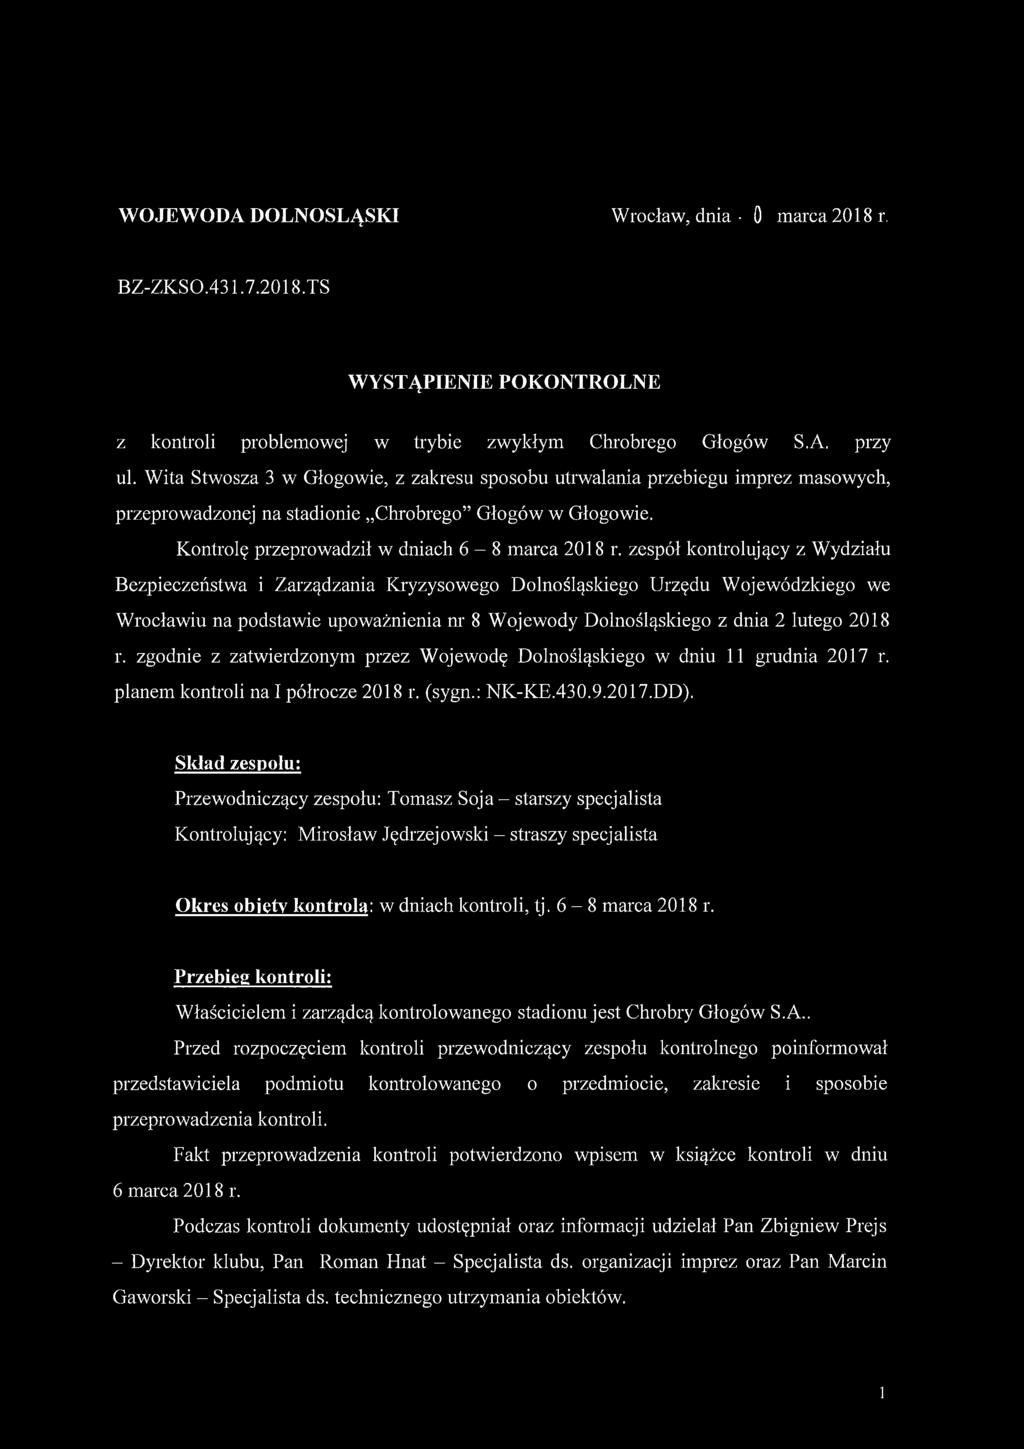 zespół kontrolujący z Wydziału Bezpieczeństwa i Zarządzania Kryzysowego Dolnośląskiego Urzędu Wojewódzkiego we Wrocławiu na podstawie upoważnienia nr 8 Wojewody Dolnośląskiego z dnia 2 lutego 2018 r.